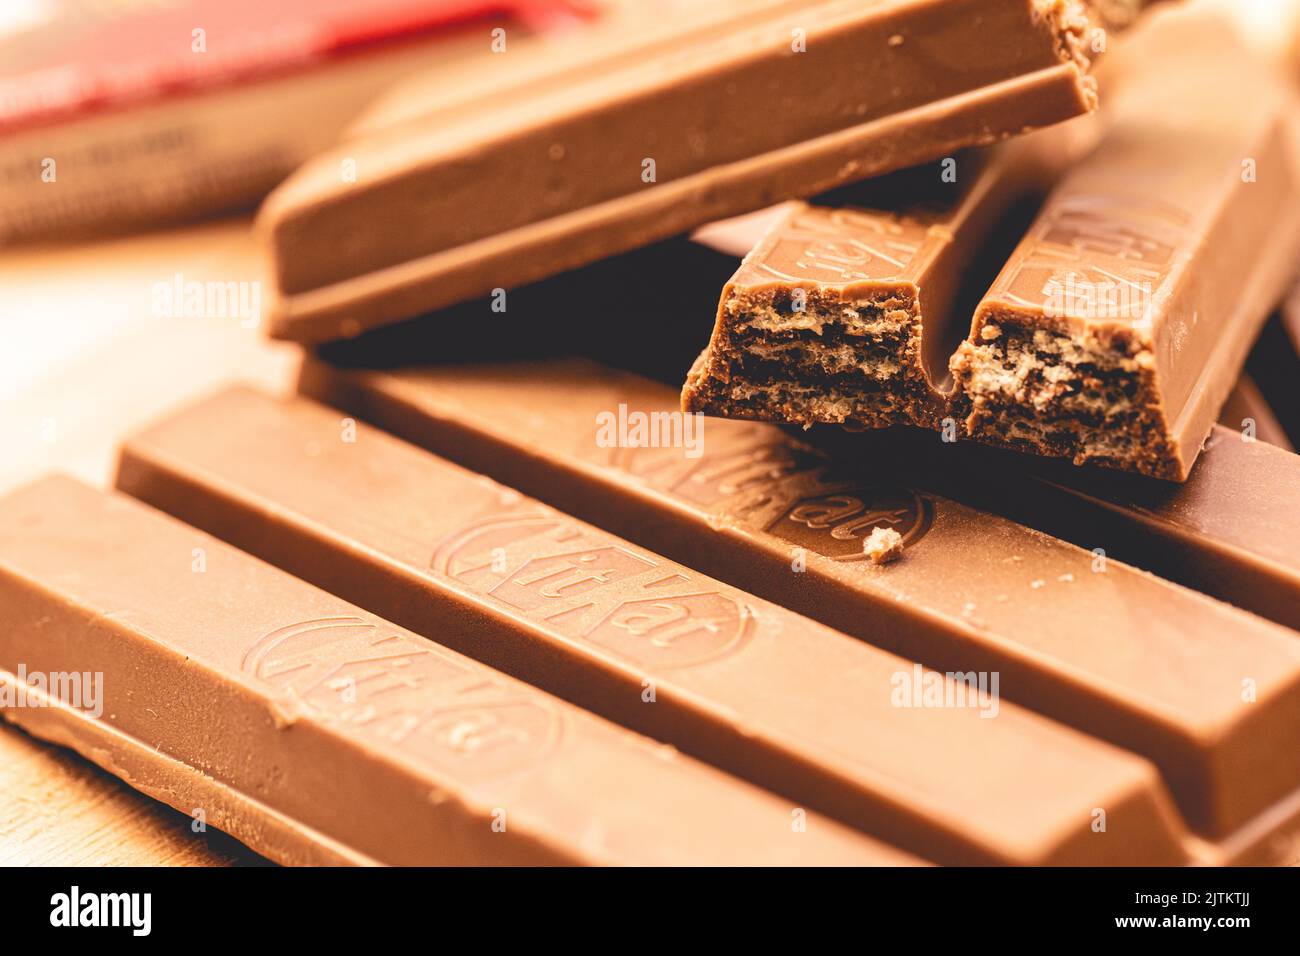 LVIV, UKRAINE - April 08, 2021: Kitkat mini chocolate bar in a